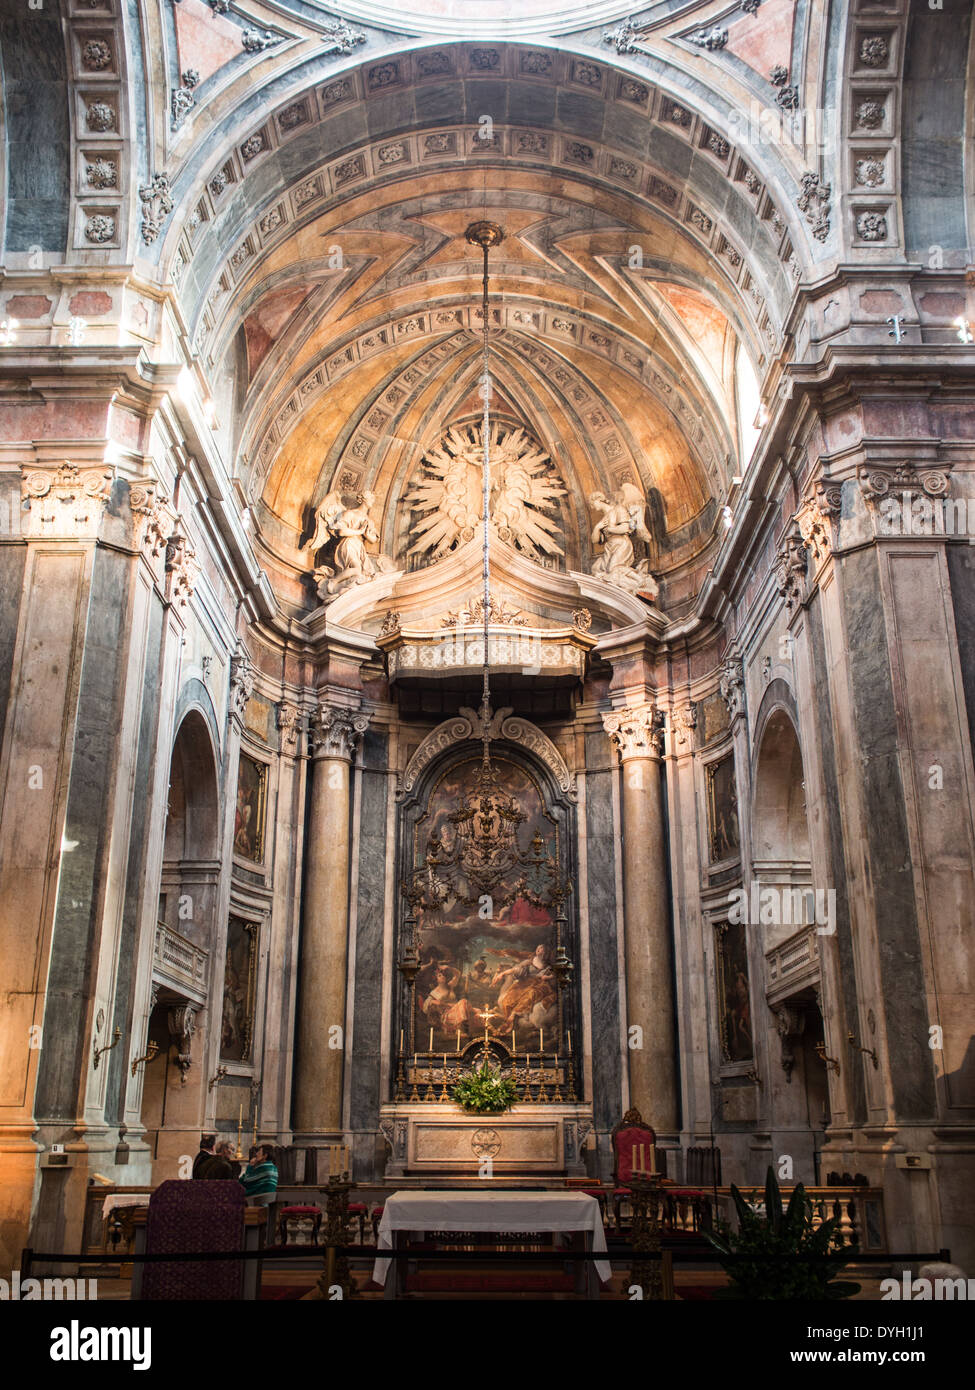 Main altar of Estrela Basilica Stock Photo